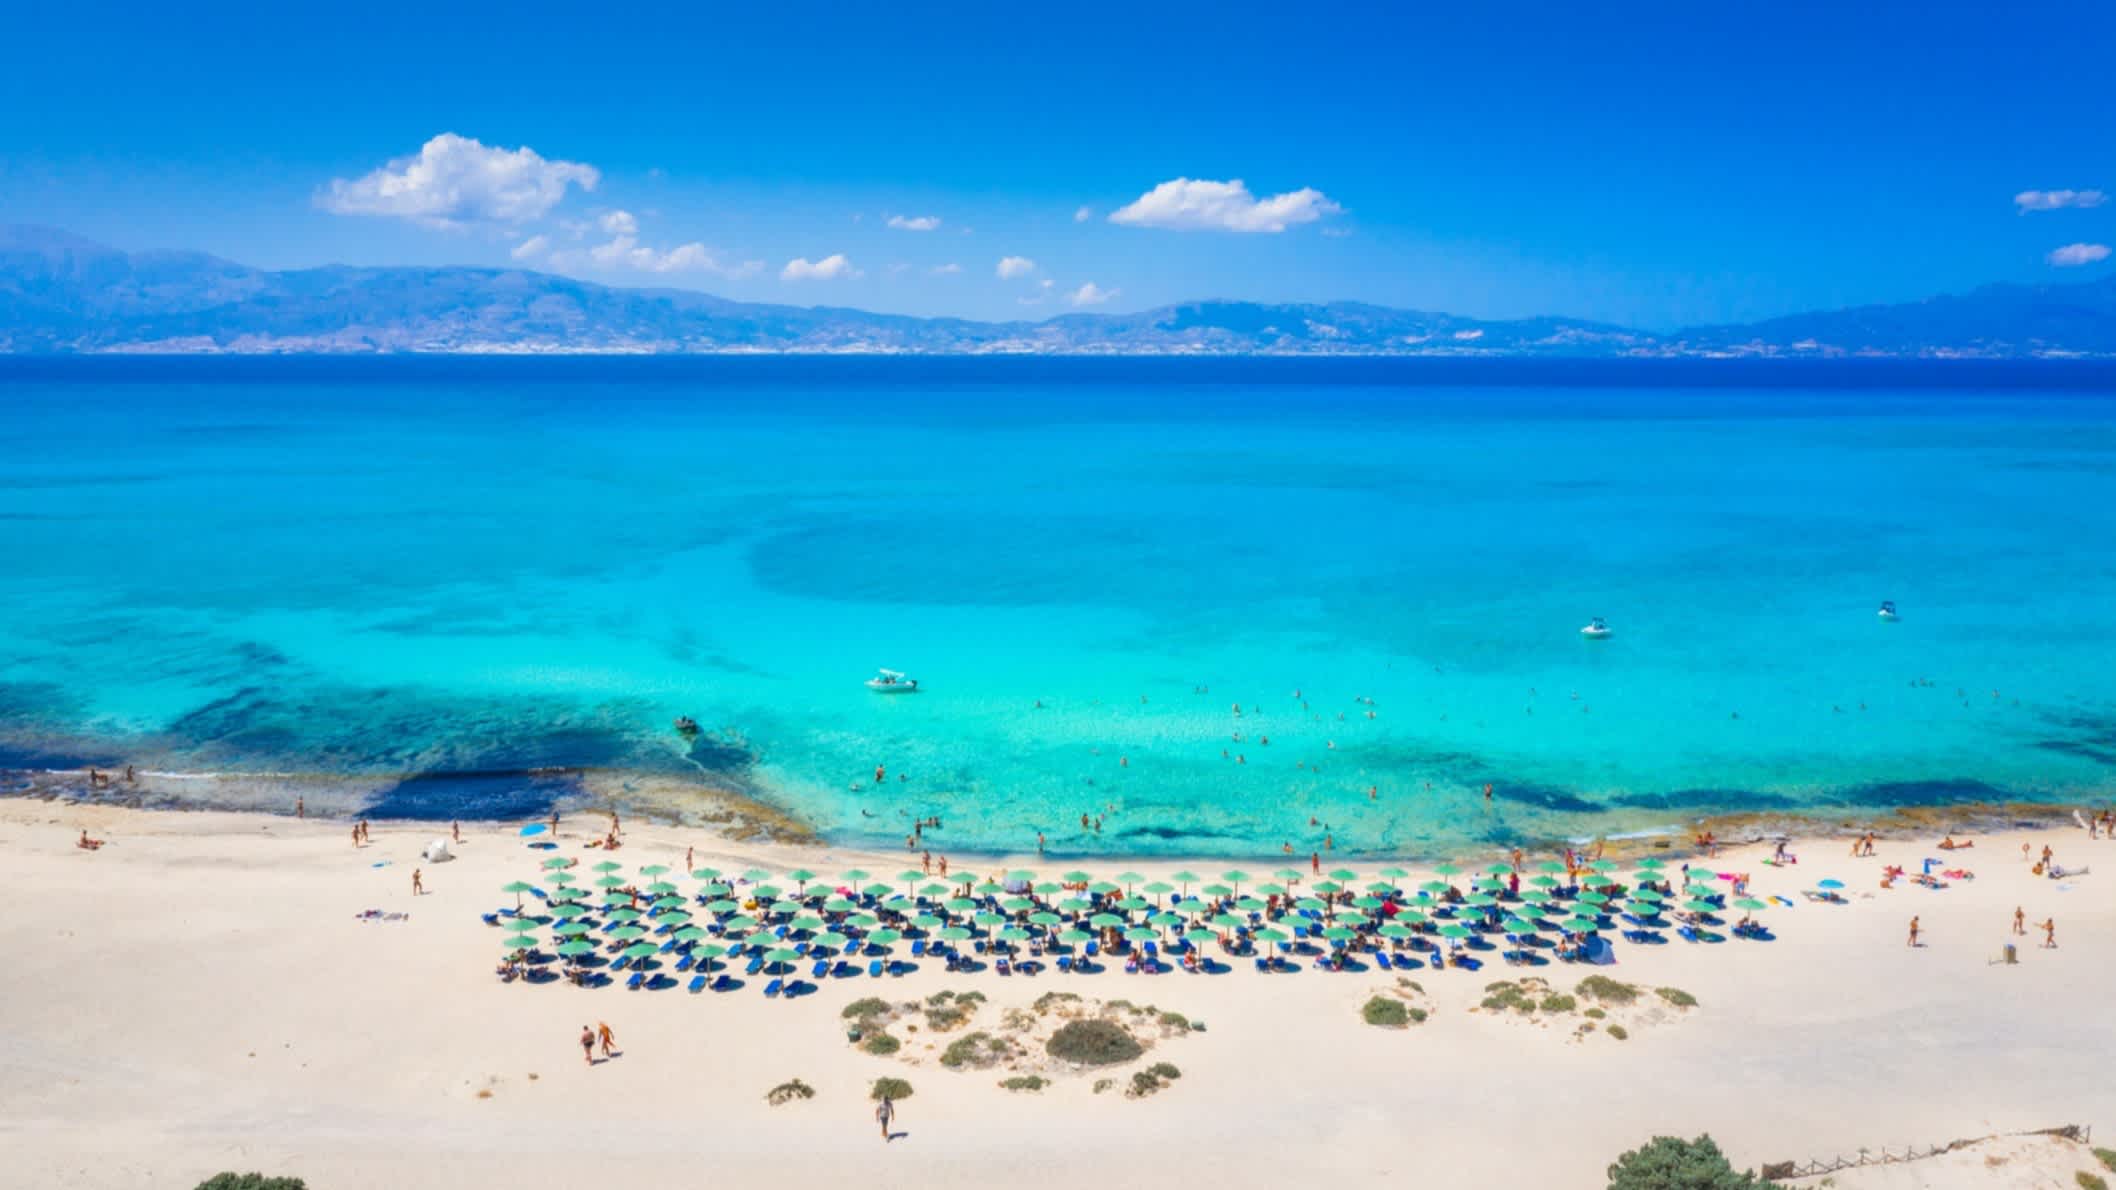 Luftaufnahme des Belegrina Strands auf der Chryssi Insel, Kreta, Griechenland mit azurblauem Meer, Sonnenschirmen und einem Gebirge am Horizont.

